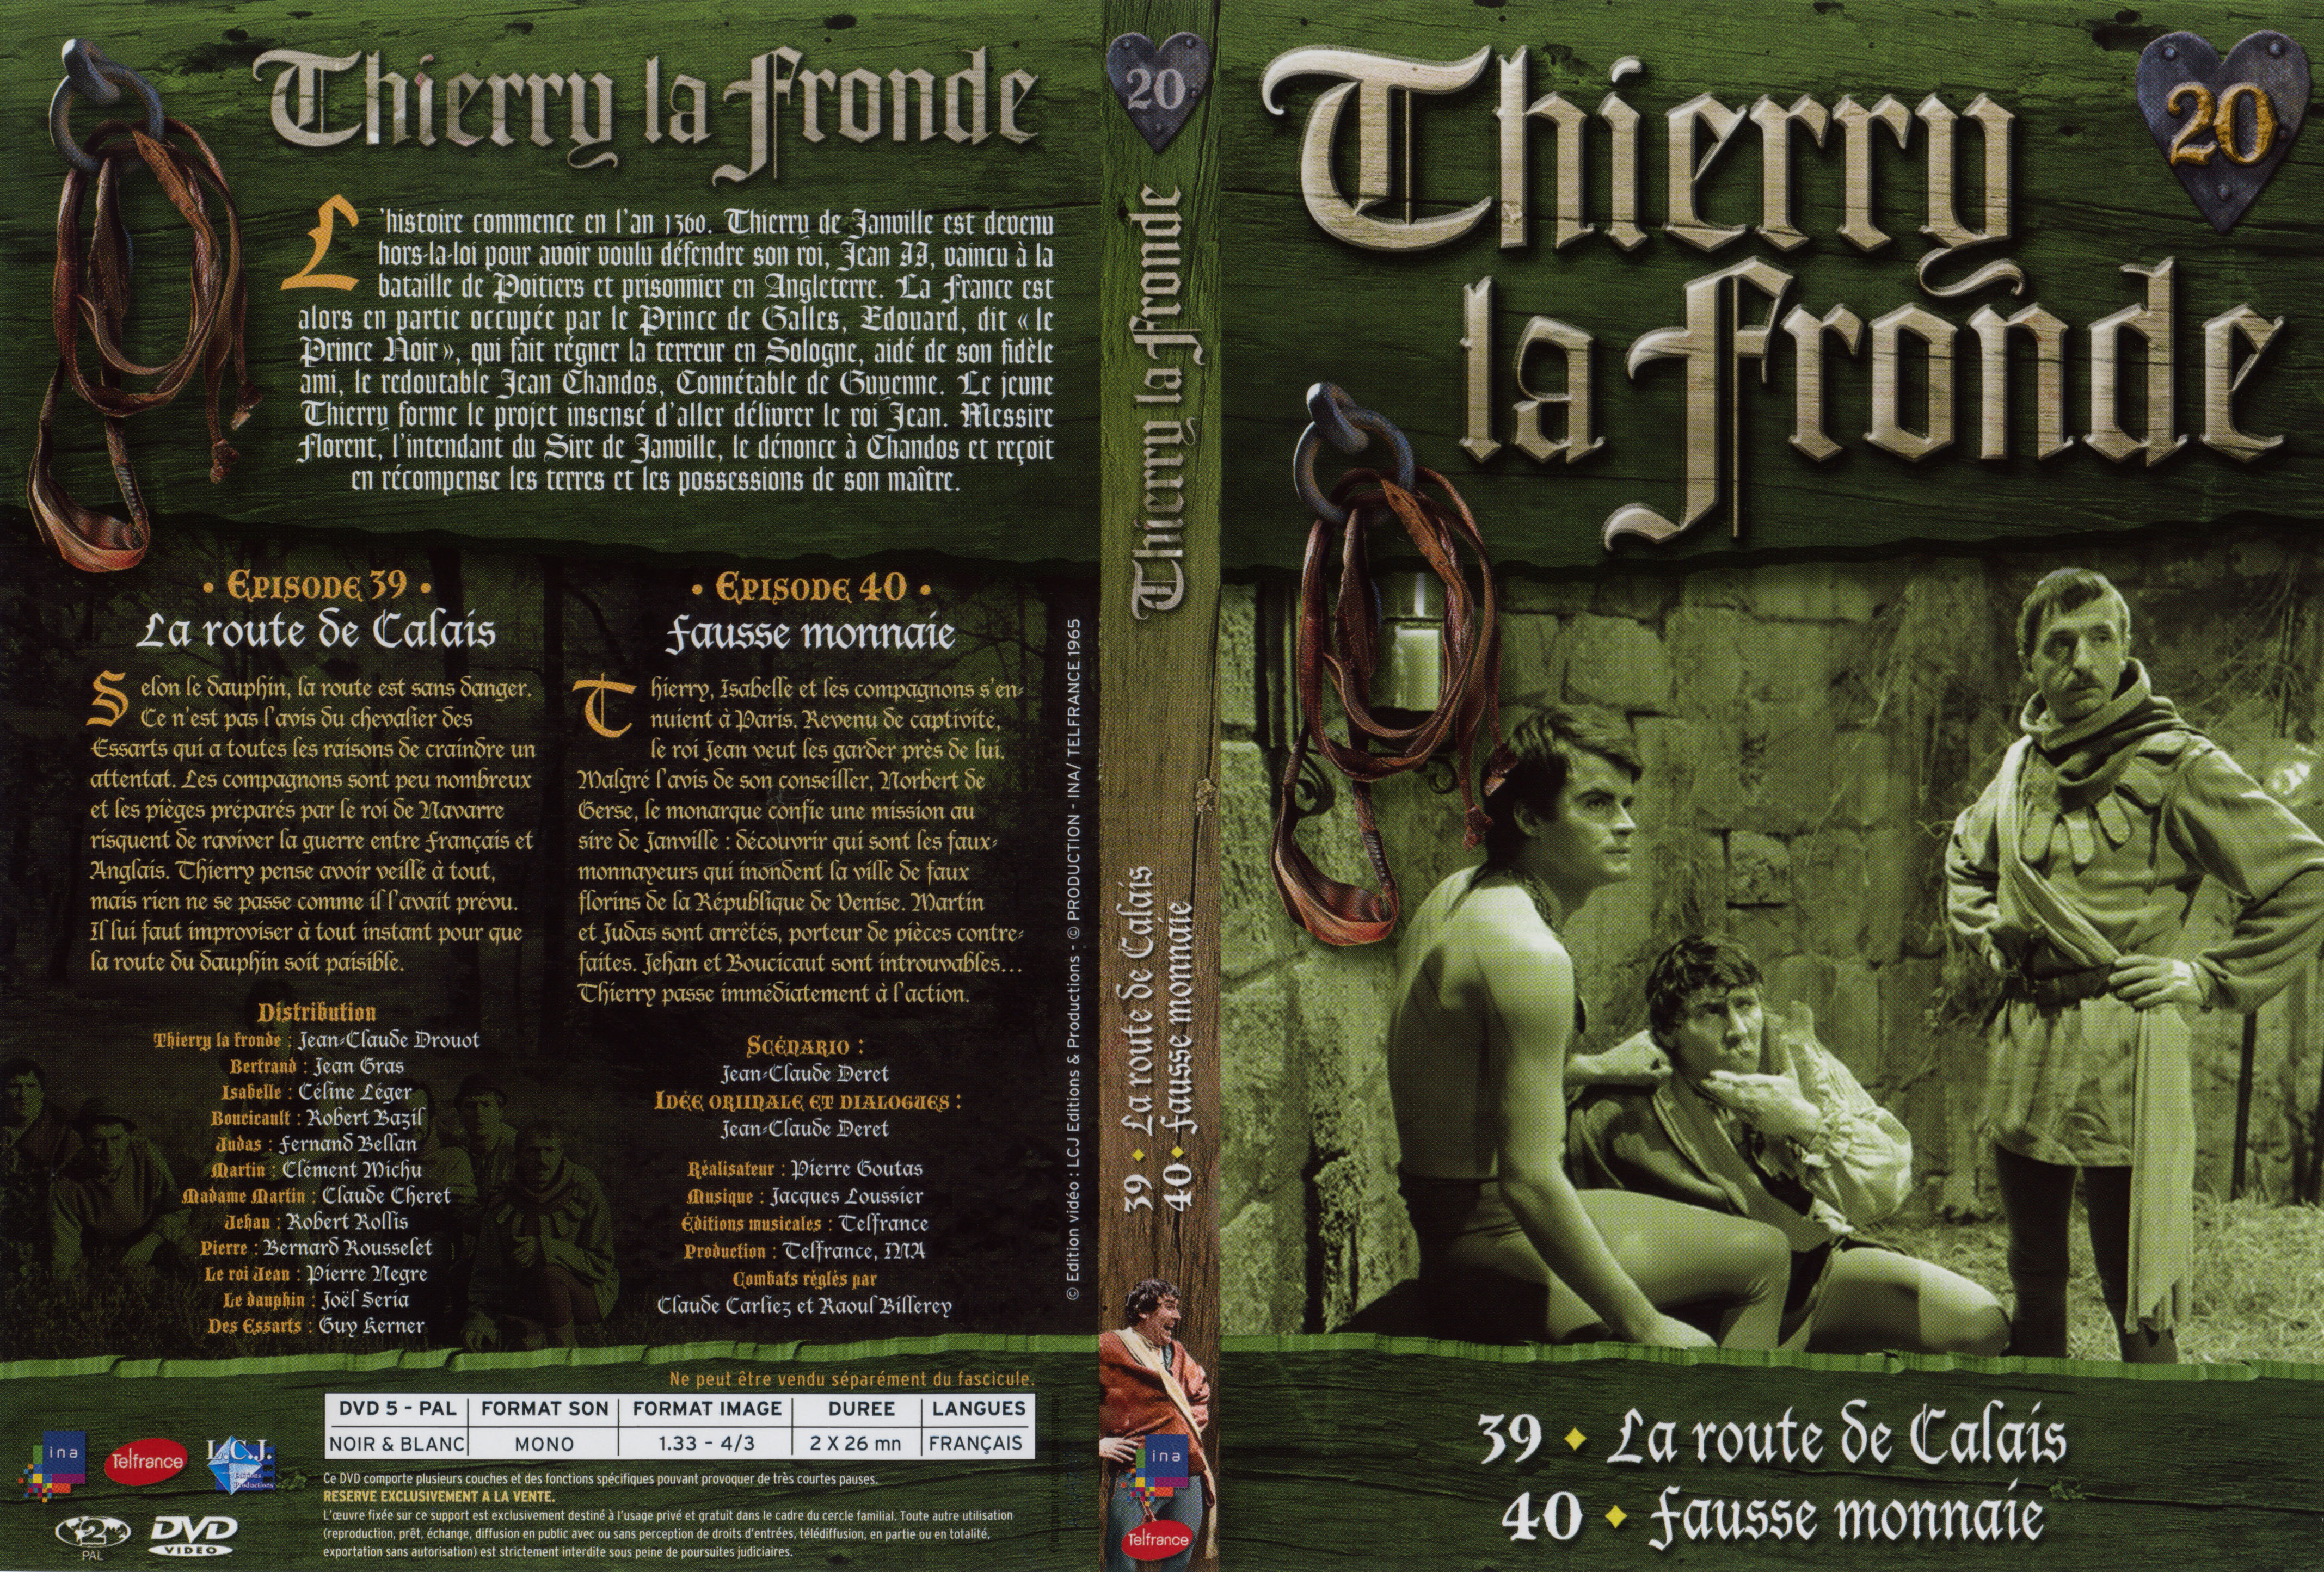 Jaquette DVD Thierry la Fronde vol 20